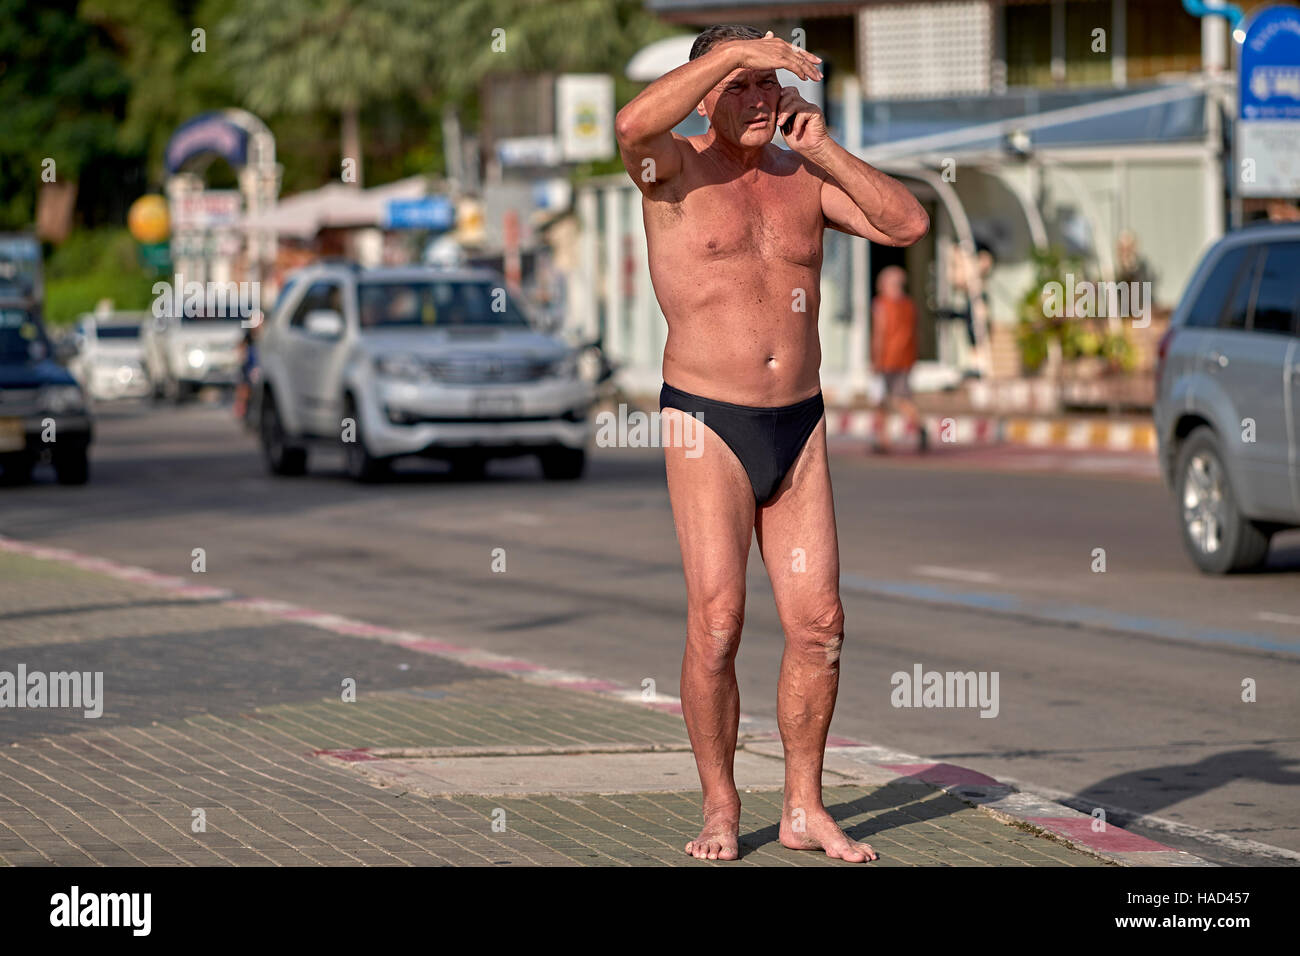 Habillé de façon inappropriée caucasien homme portant des Speedos maillot de bain dans la rue. S. E. Asia Pattaya Thaïlande Banque D'Images